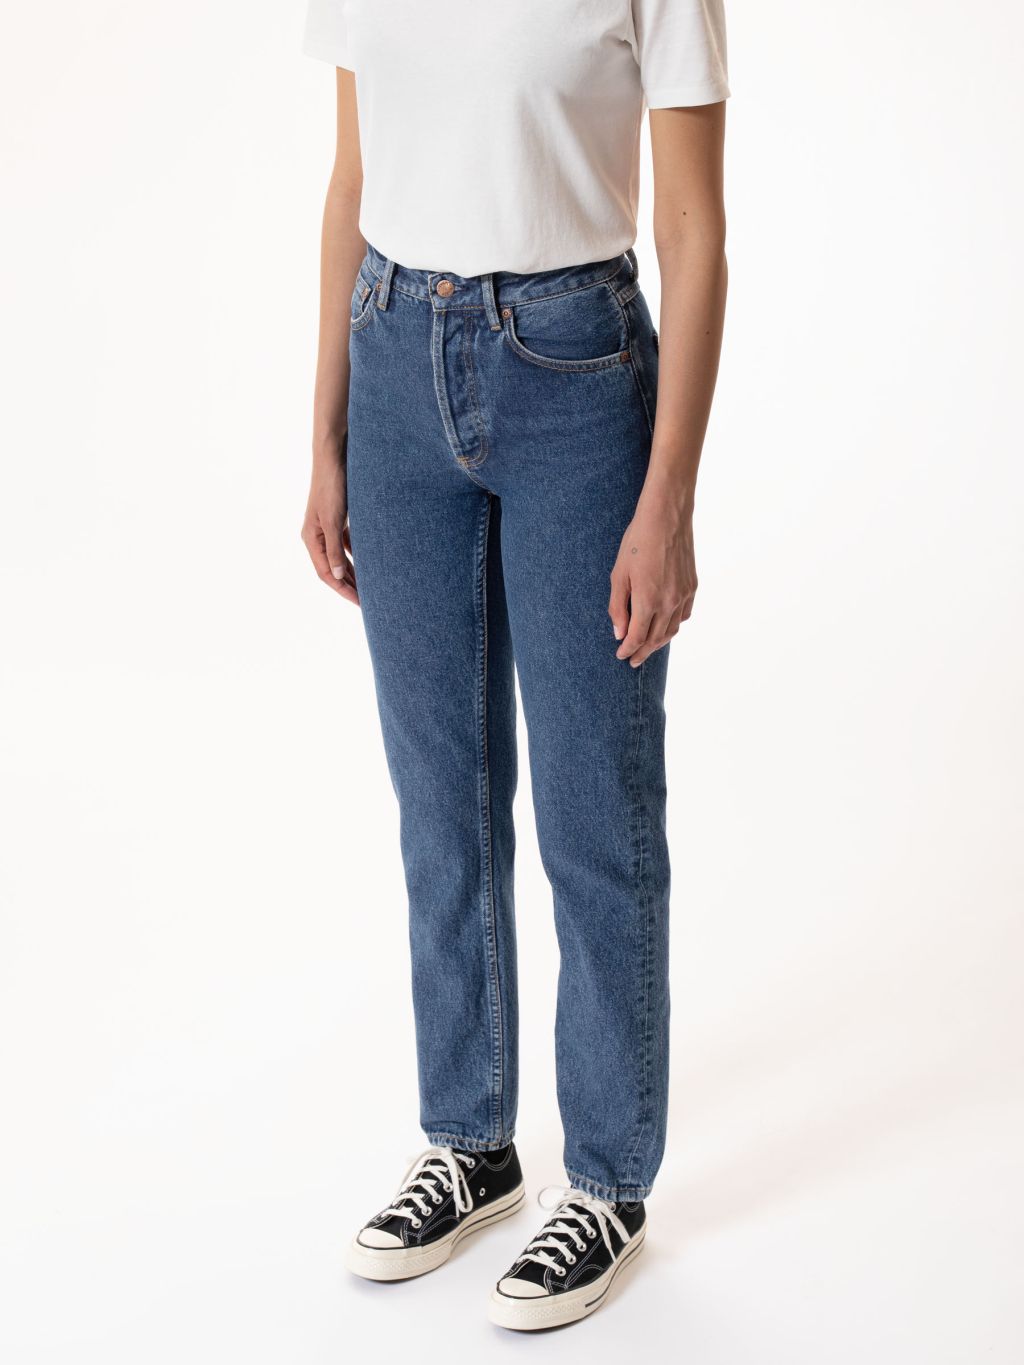 Breezy Britt High Waist Jeans - 90s Stone 29/34